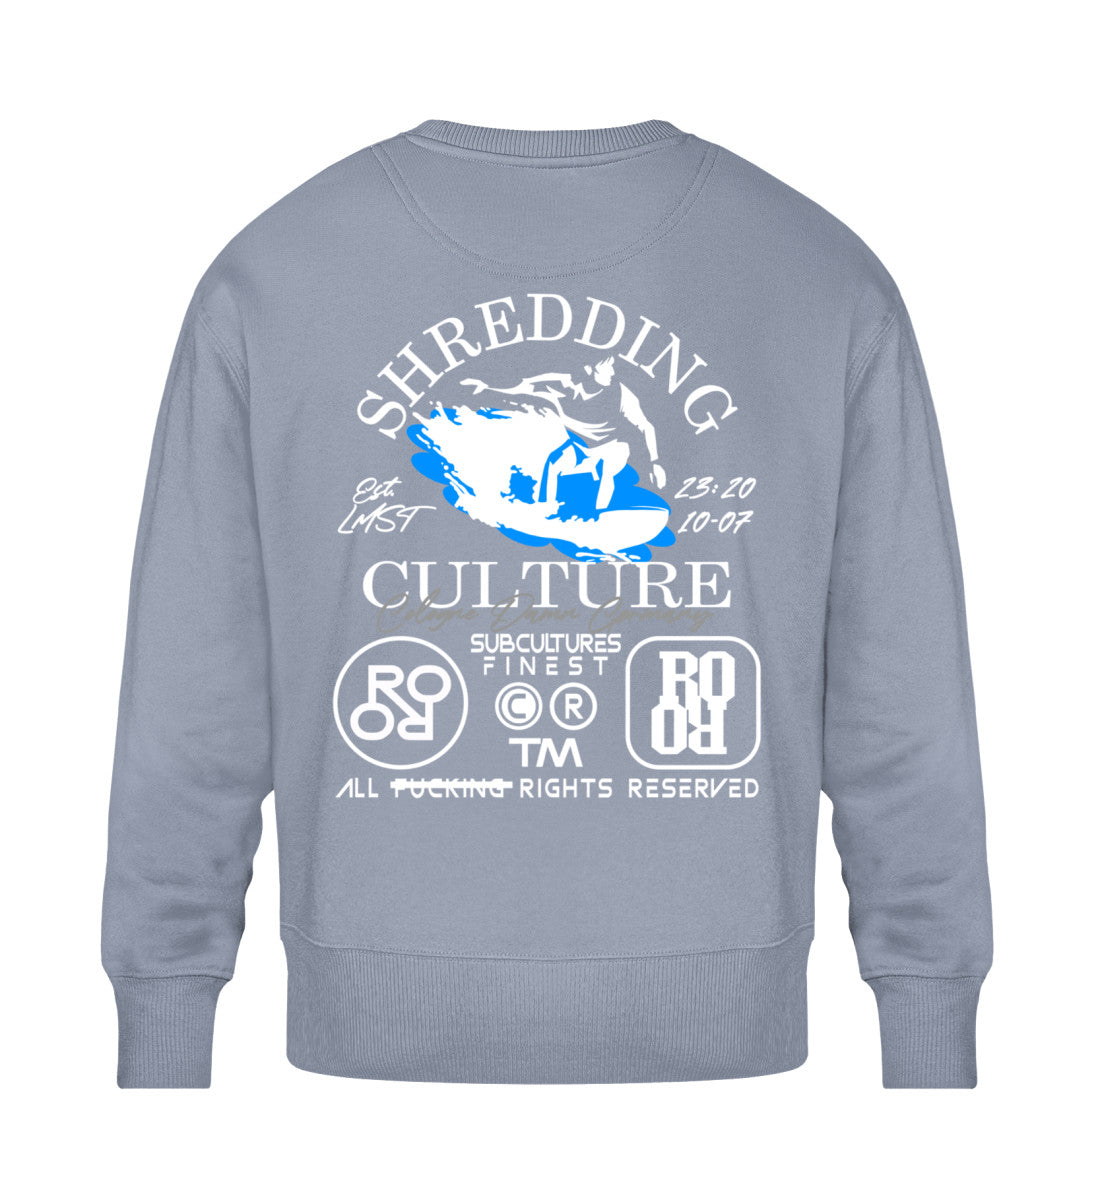 Serene Blue farbiges Sweatshirt Unisex für Damen und Herren bedruckt mit dem Design der Roger Rockawoo Kollektion Surf shredding Culture Community